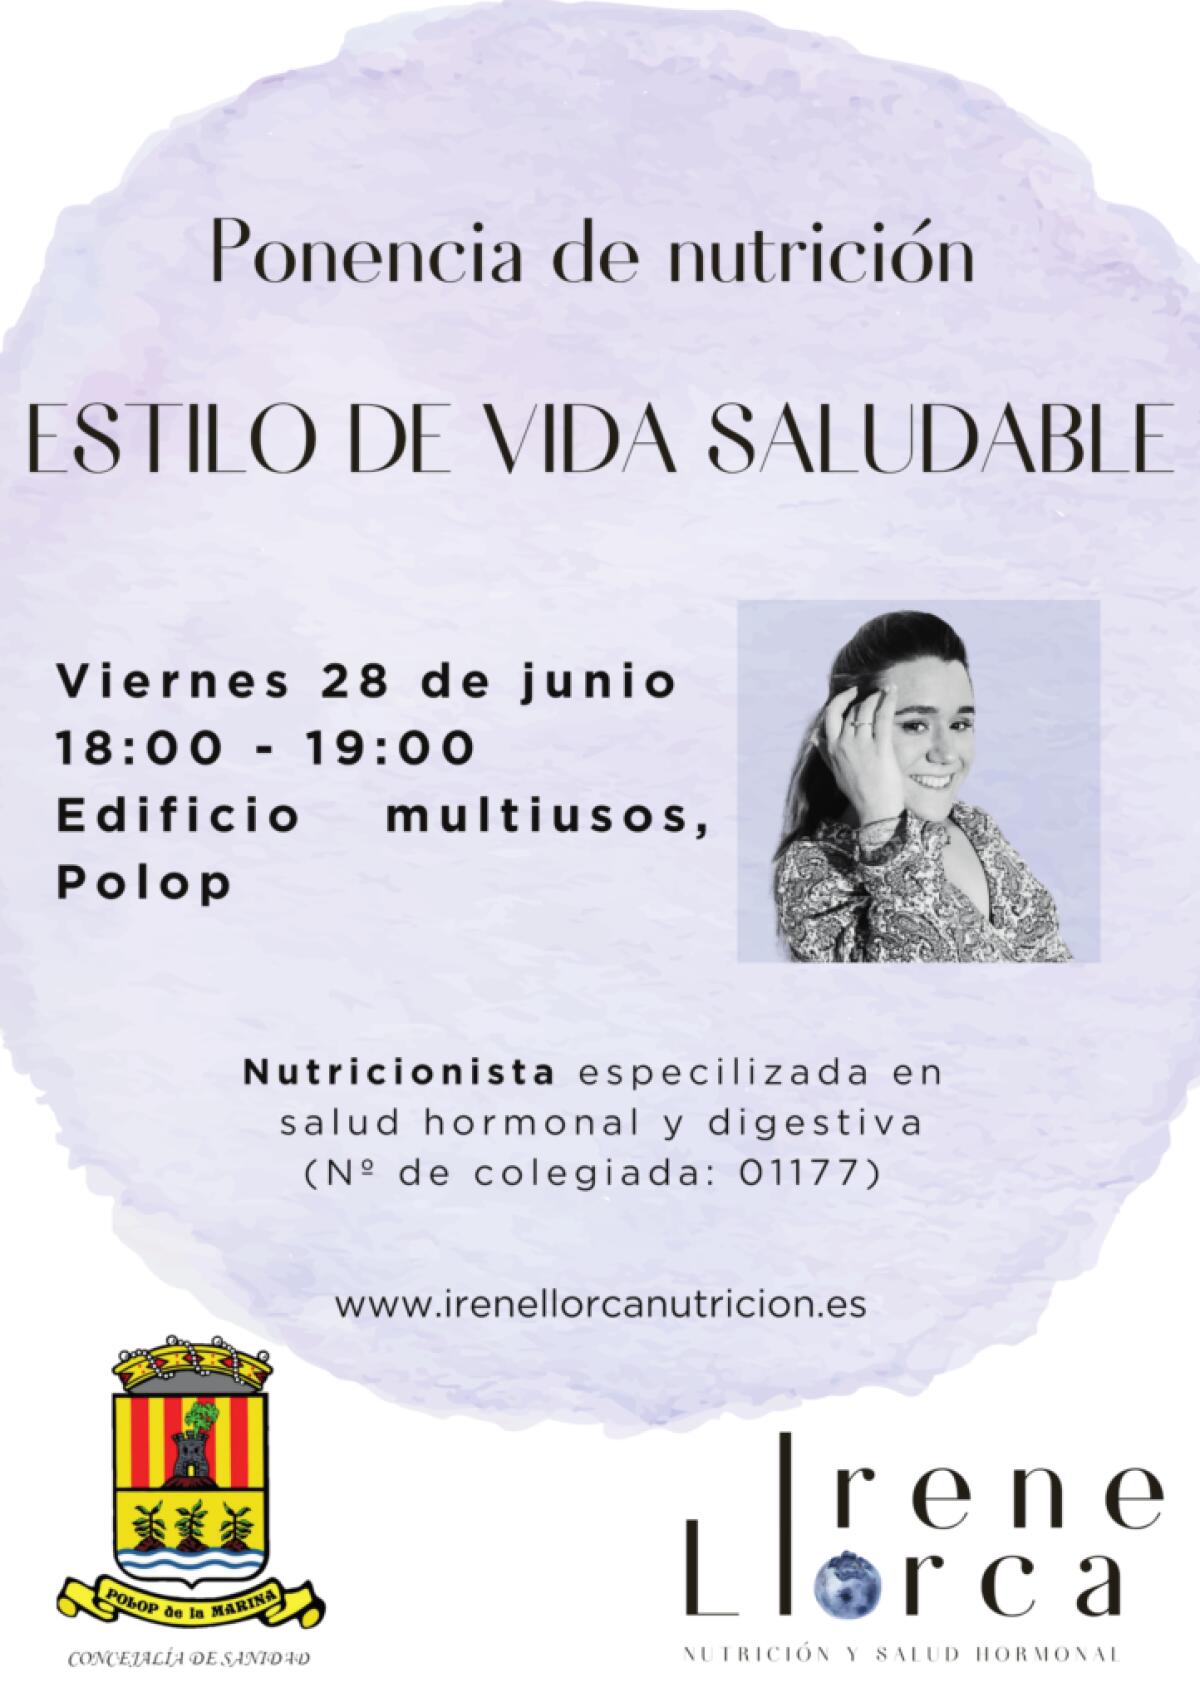 Agenda de cultura gratuita comarcal del 25 al 30 de junio